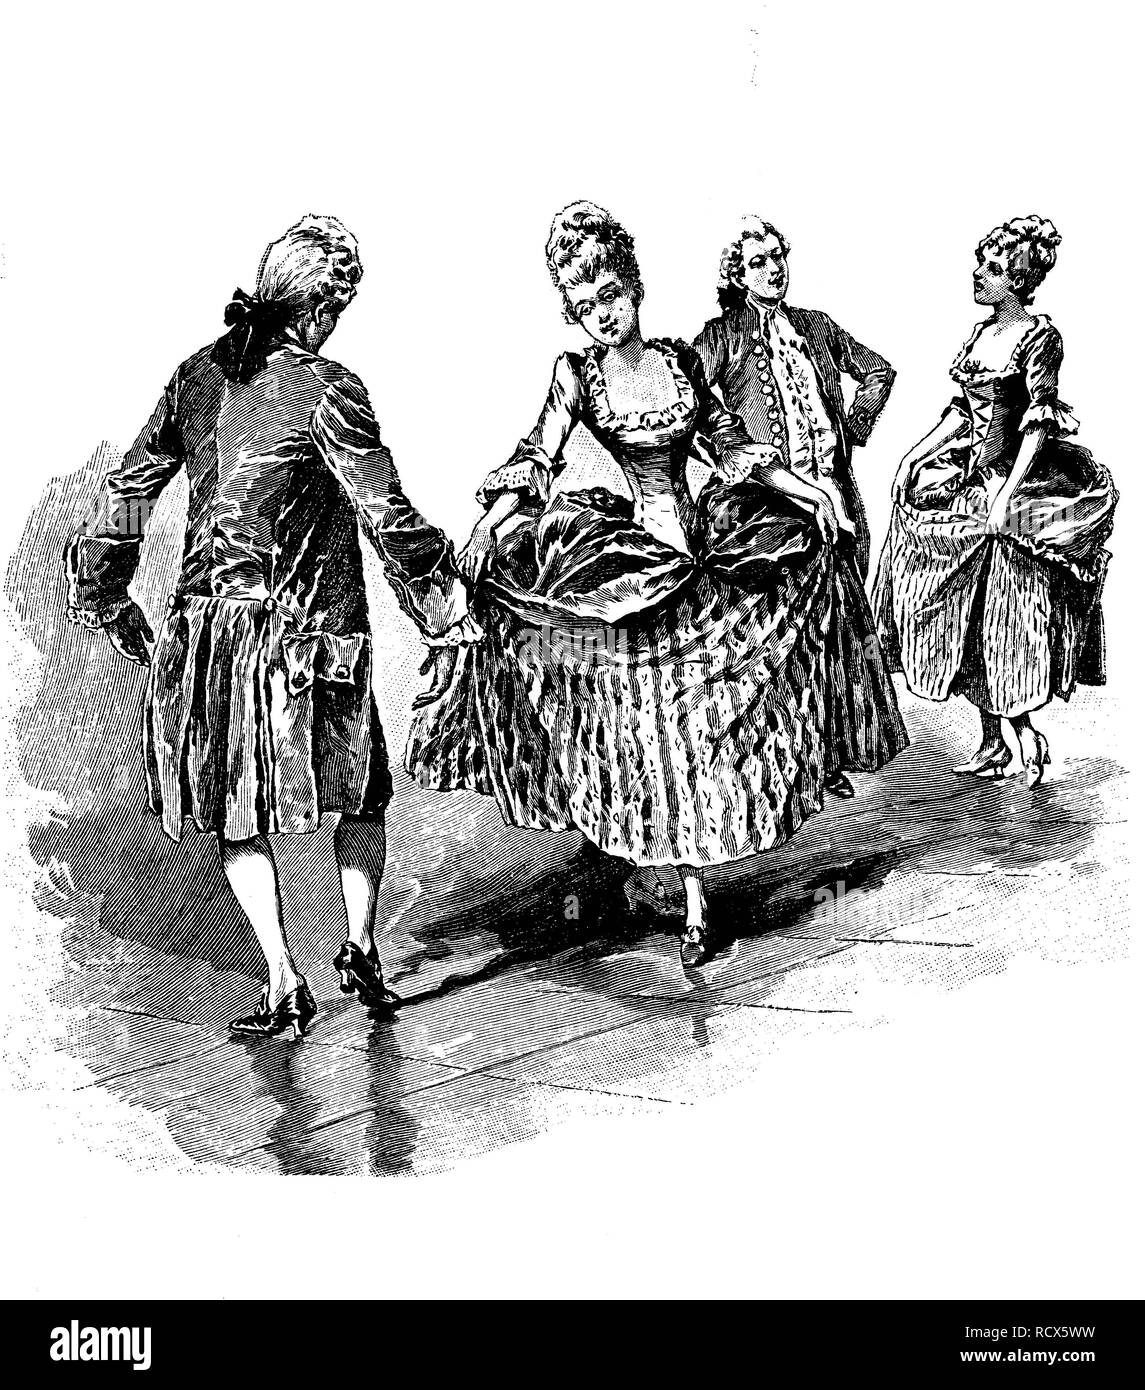 Menuett, alte französische Tänze des Barock und der Klassik Epochen, Holzschnitt, 1888, historischer Stich Stockfoto